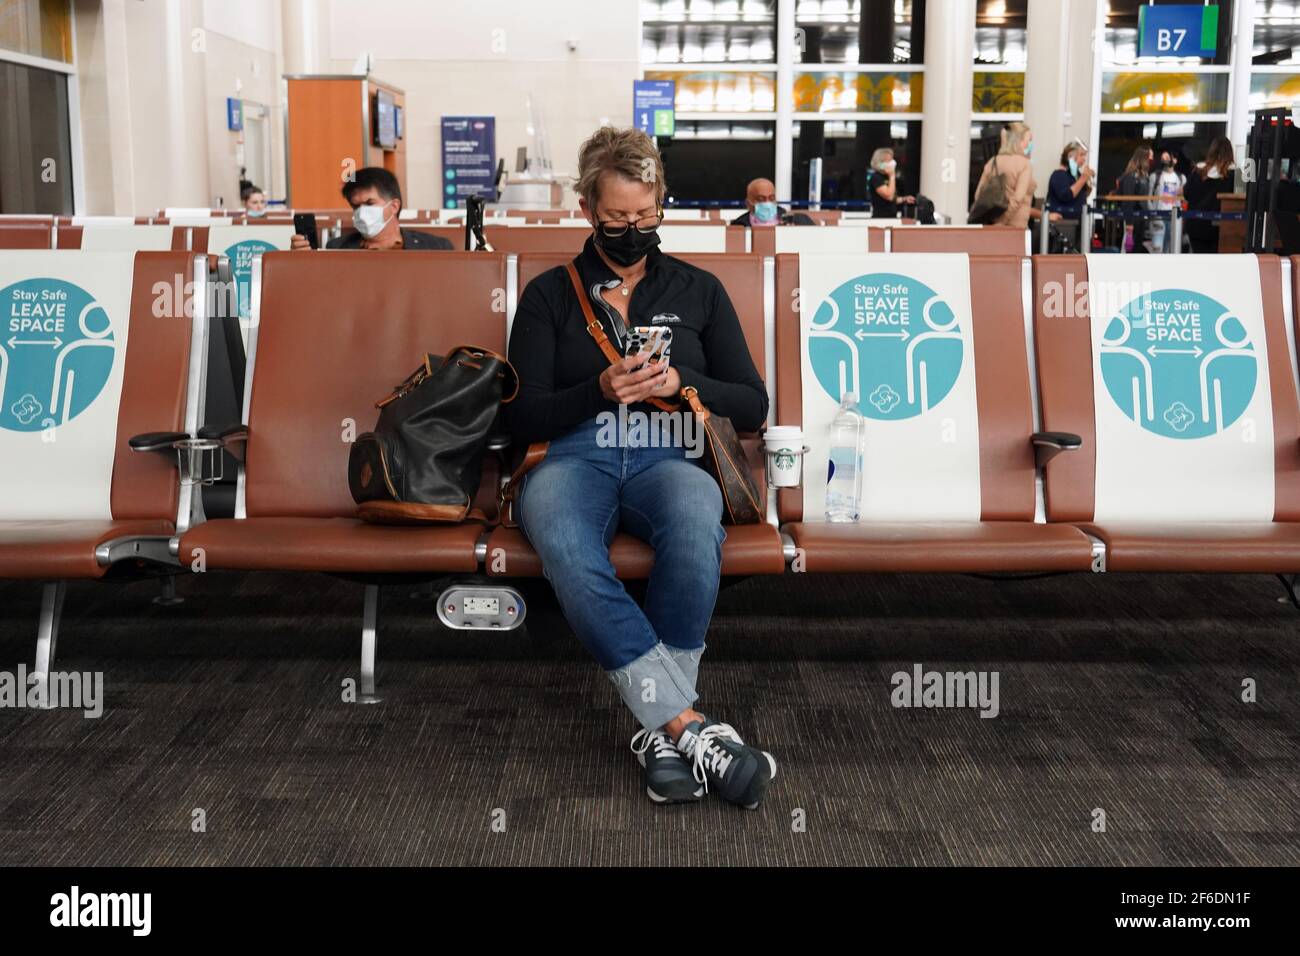 Menschen mit Gesichtsmasken sitzen zwischen physischen und sozialen Distanzierungszeichen mit den Worten „Stay Safe“. Platz lassen“ auf den Sitzen in Terminal B des Stockfoto